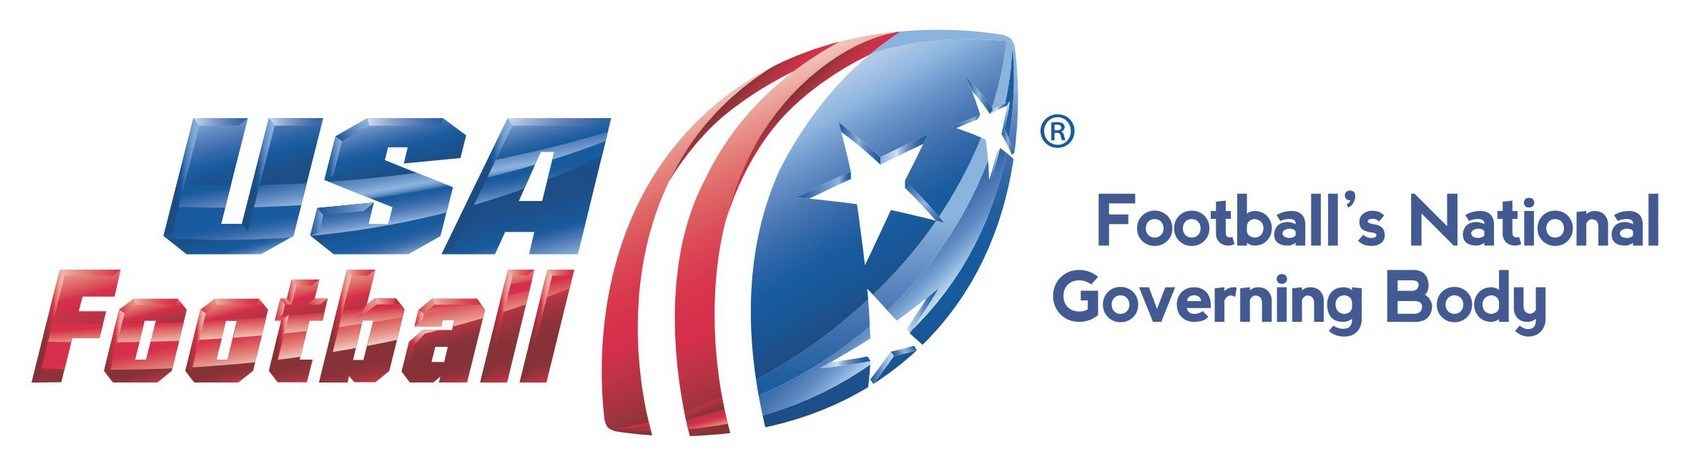 USA Football Logo [EPS File]